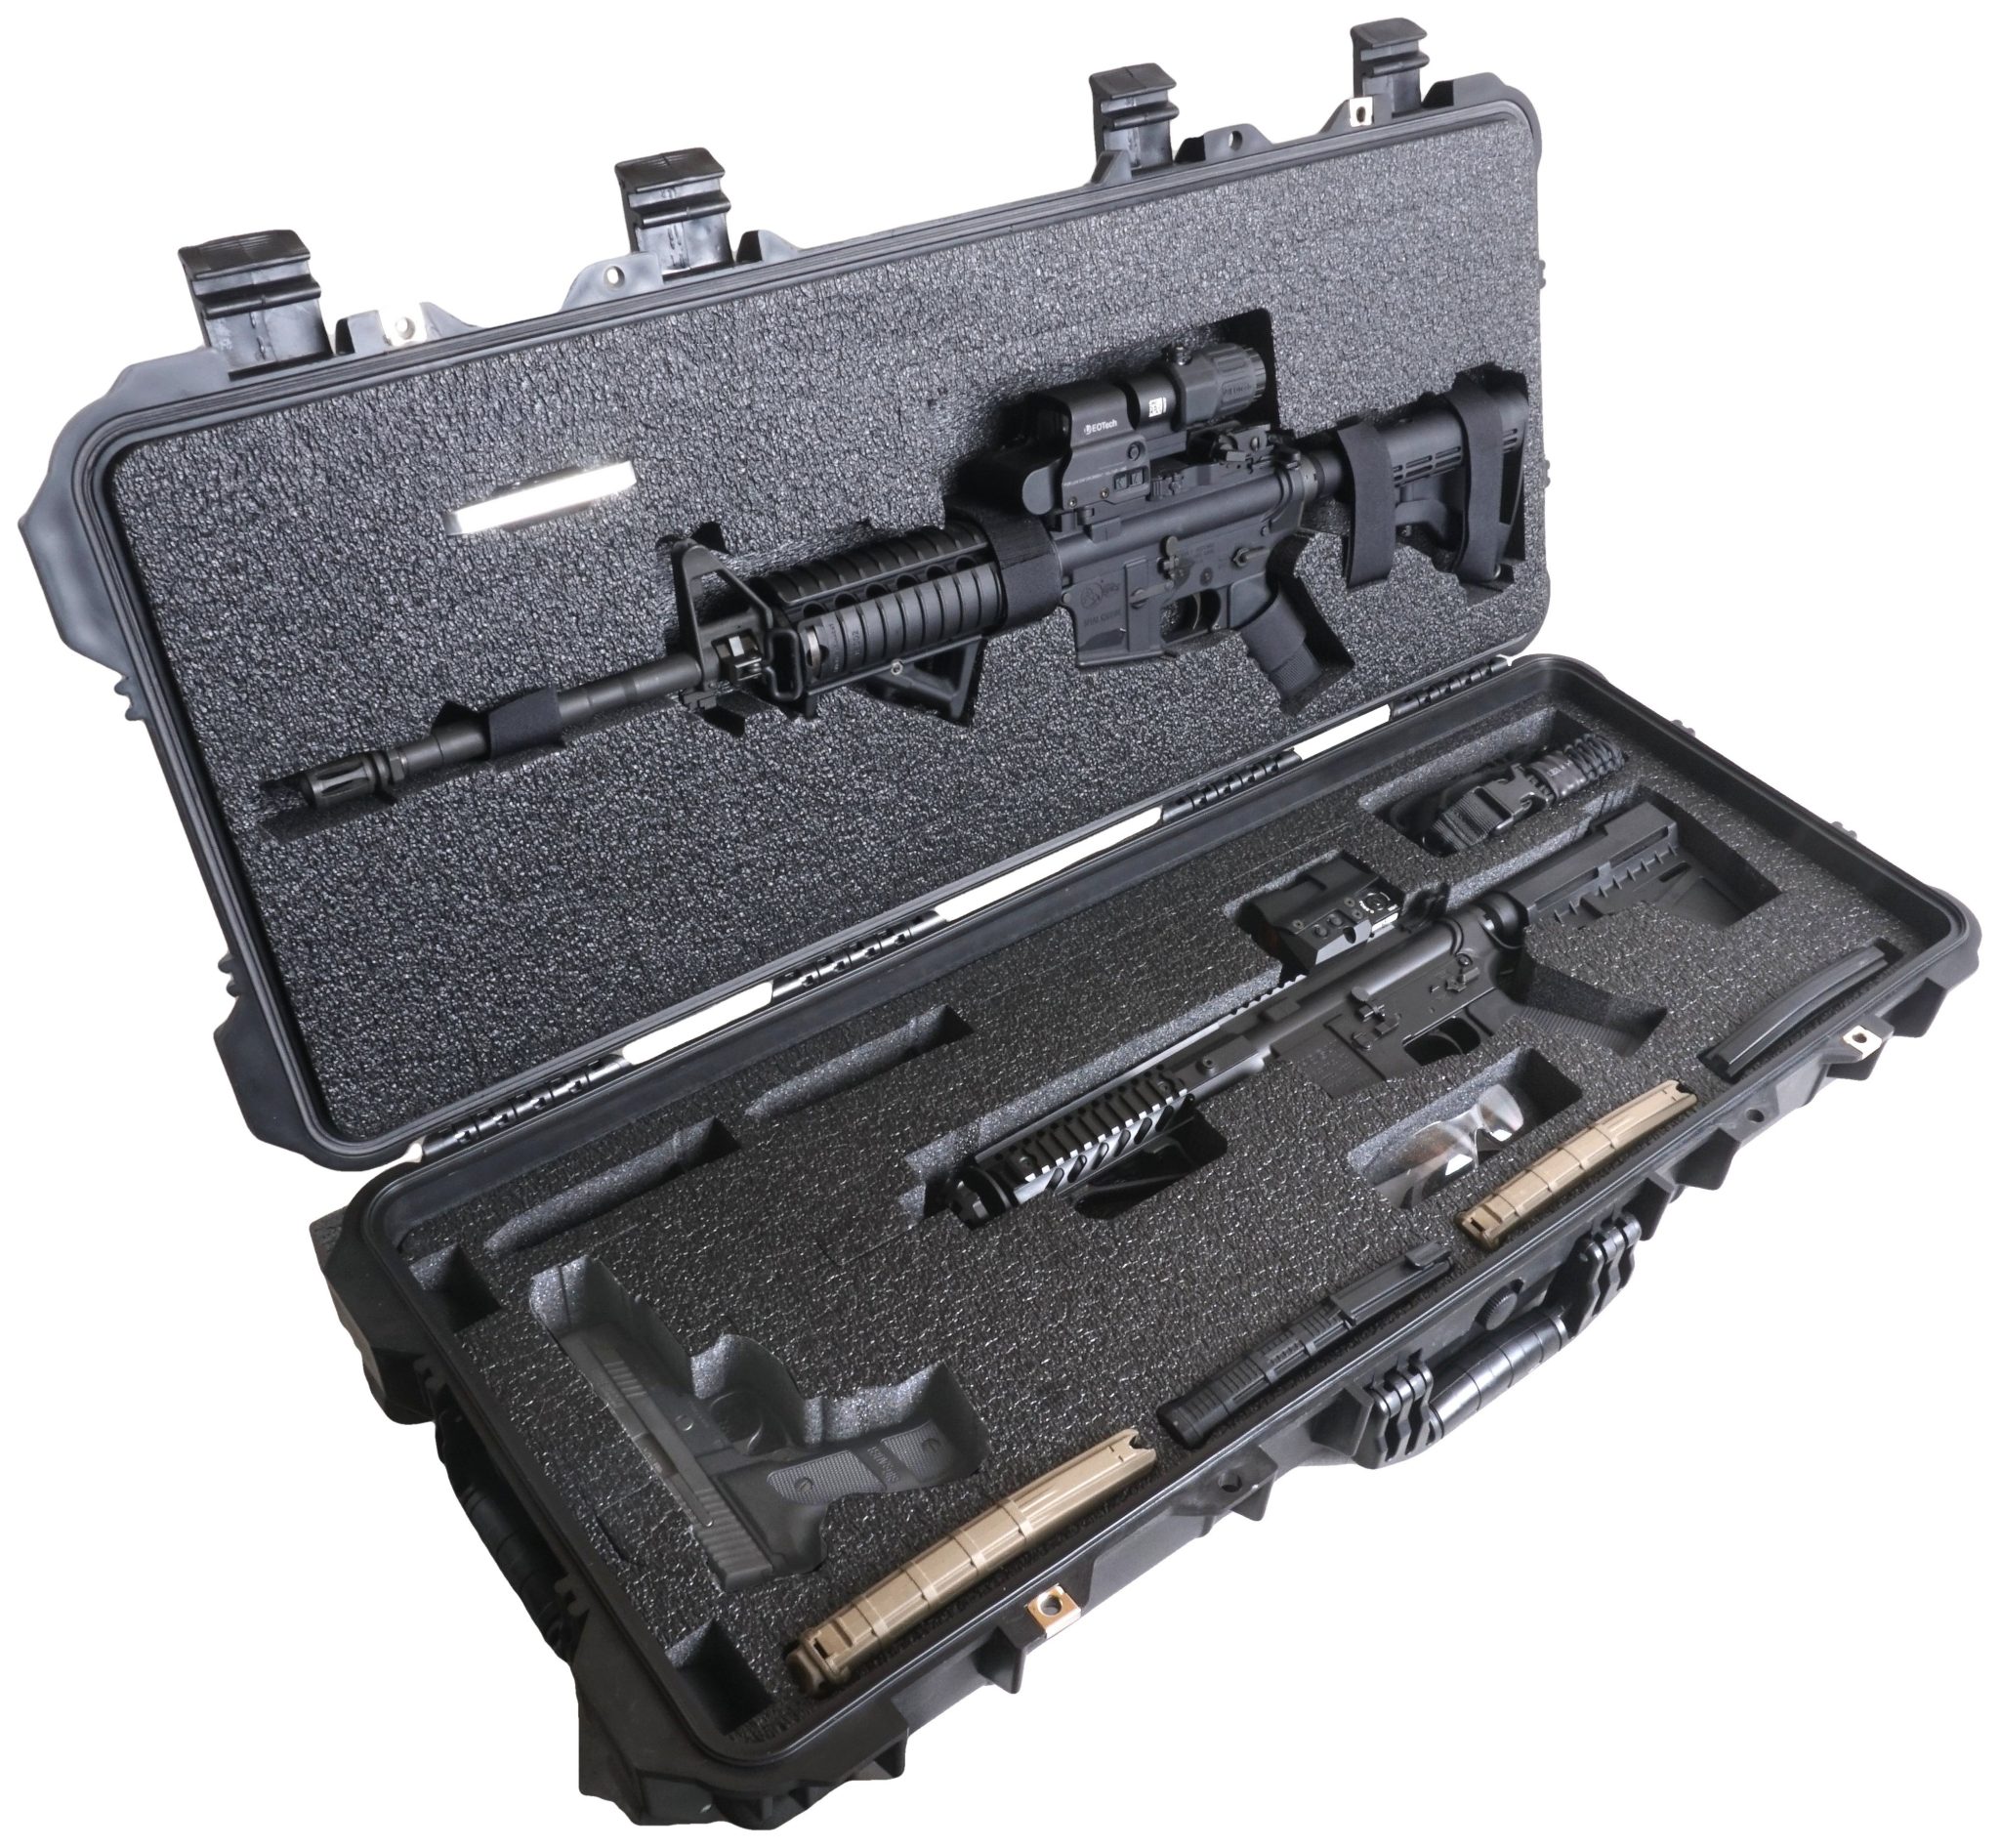 Heavy Duty AR15 Hard Rifle Cases with PreCut Foam for AR15 Carbines